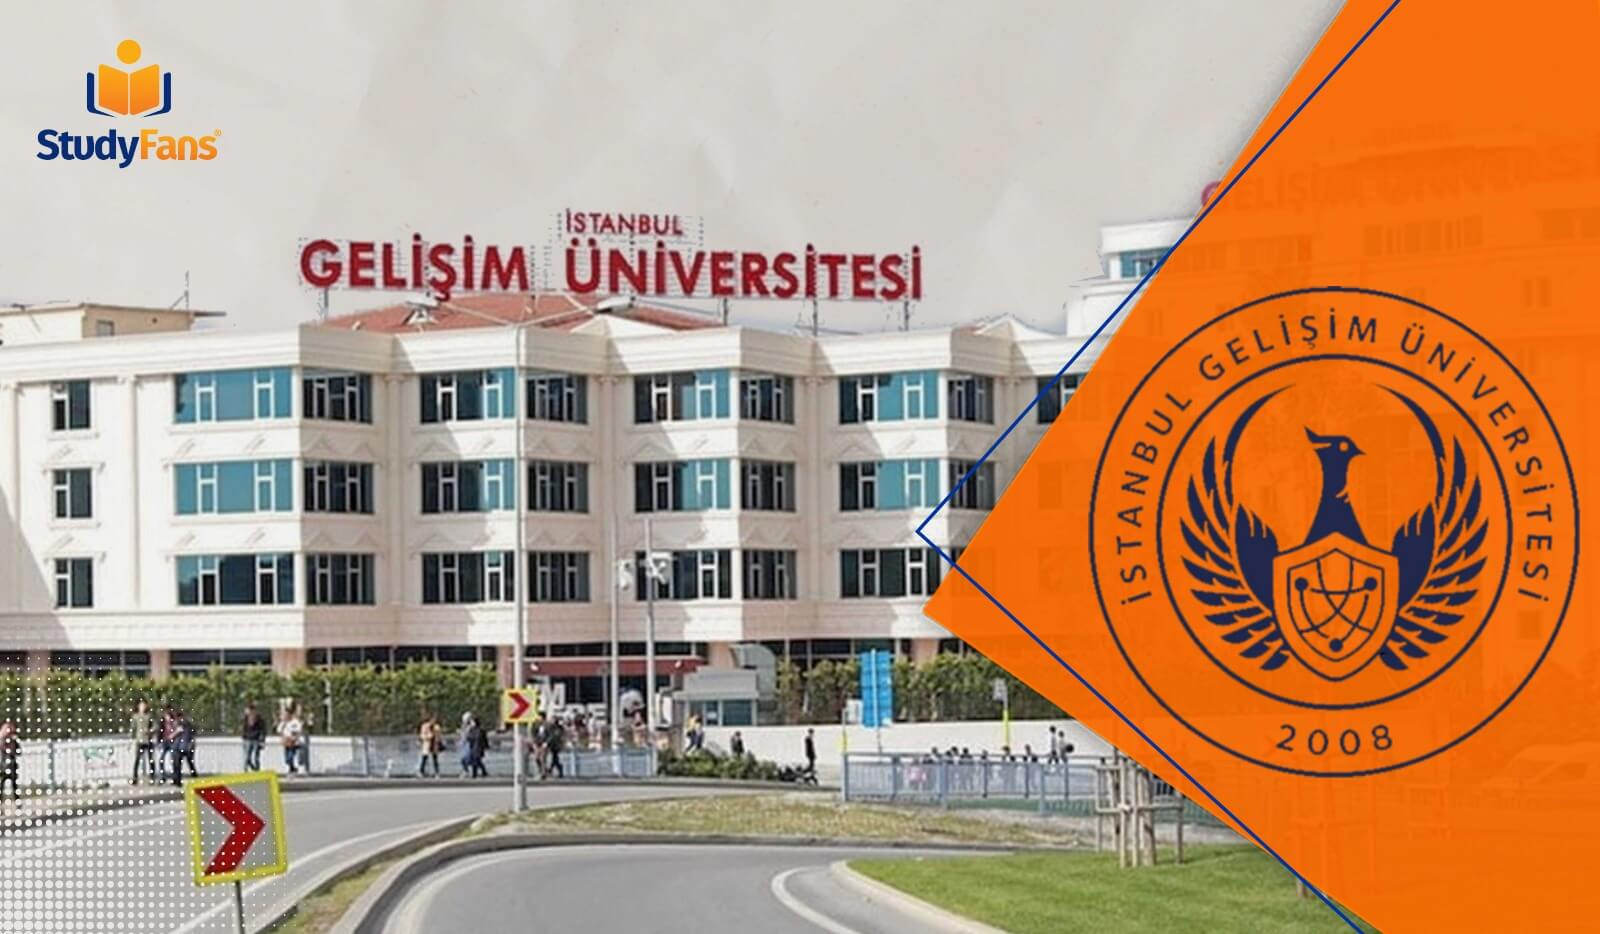 جامعة اسطنبول جيليشيم | الدراسة في تركيا